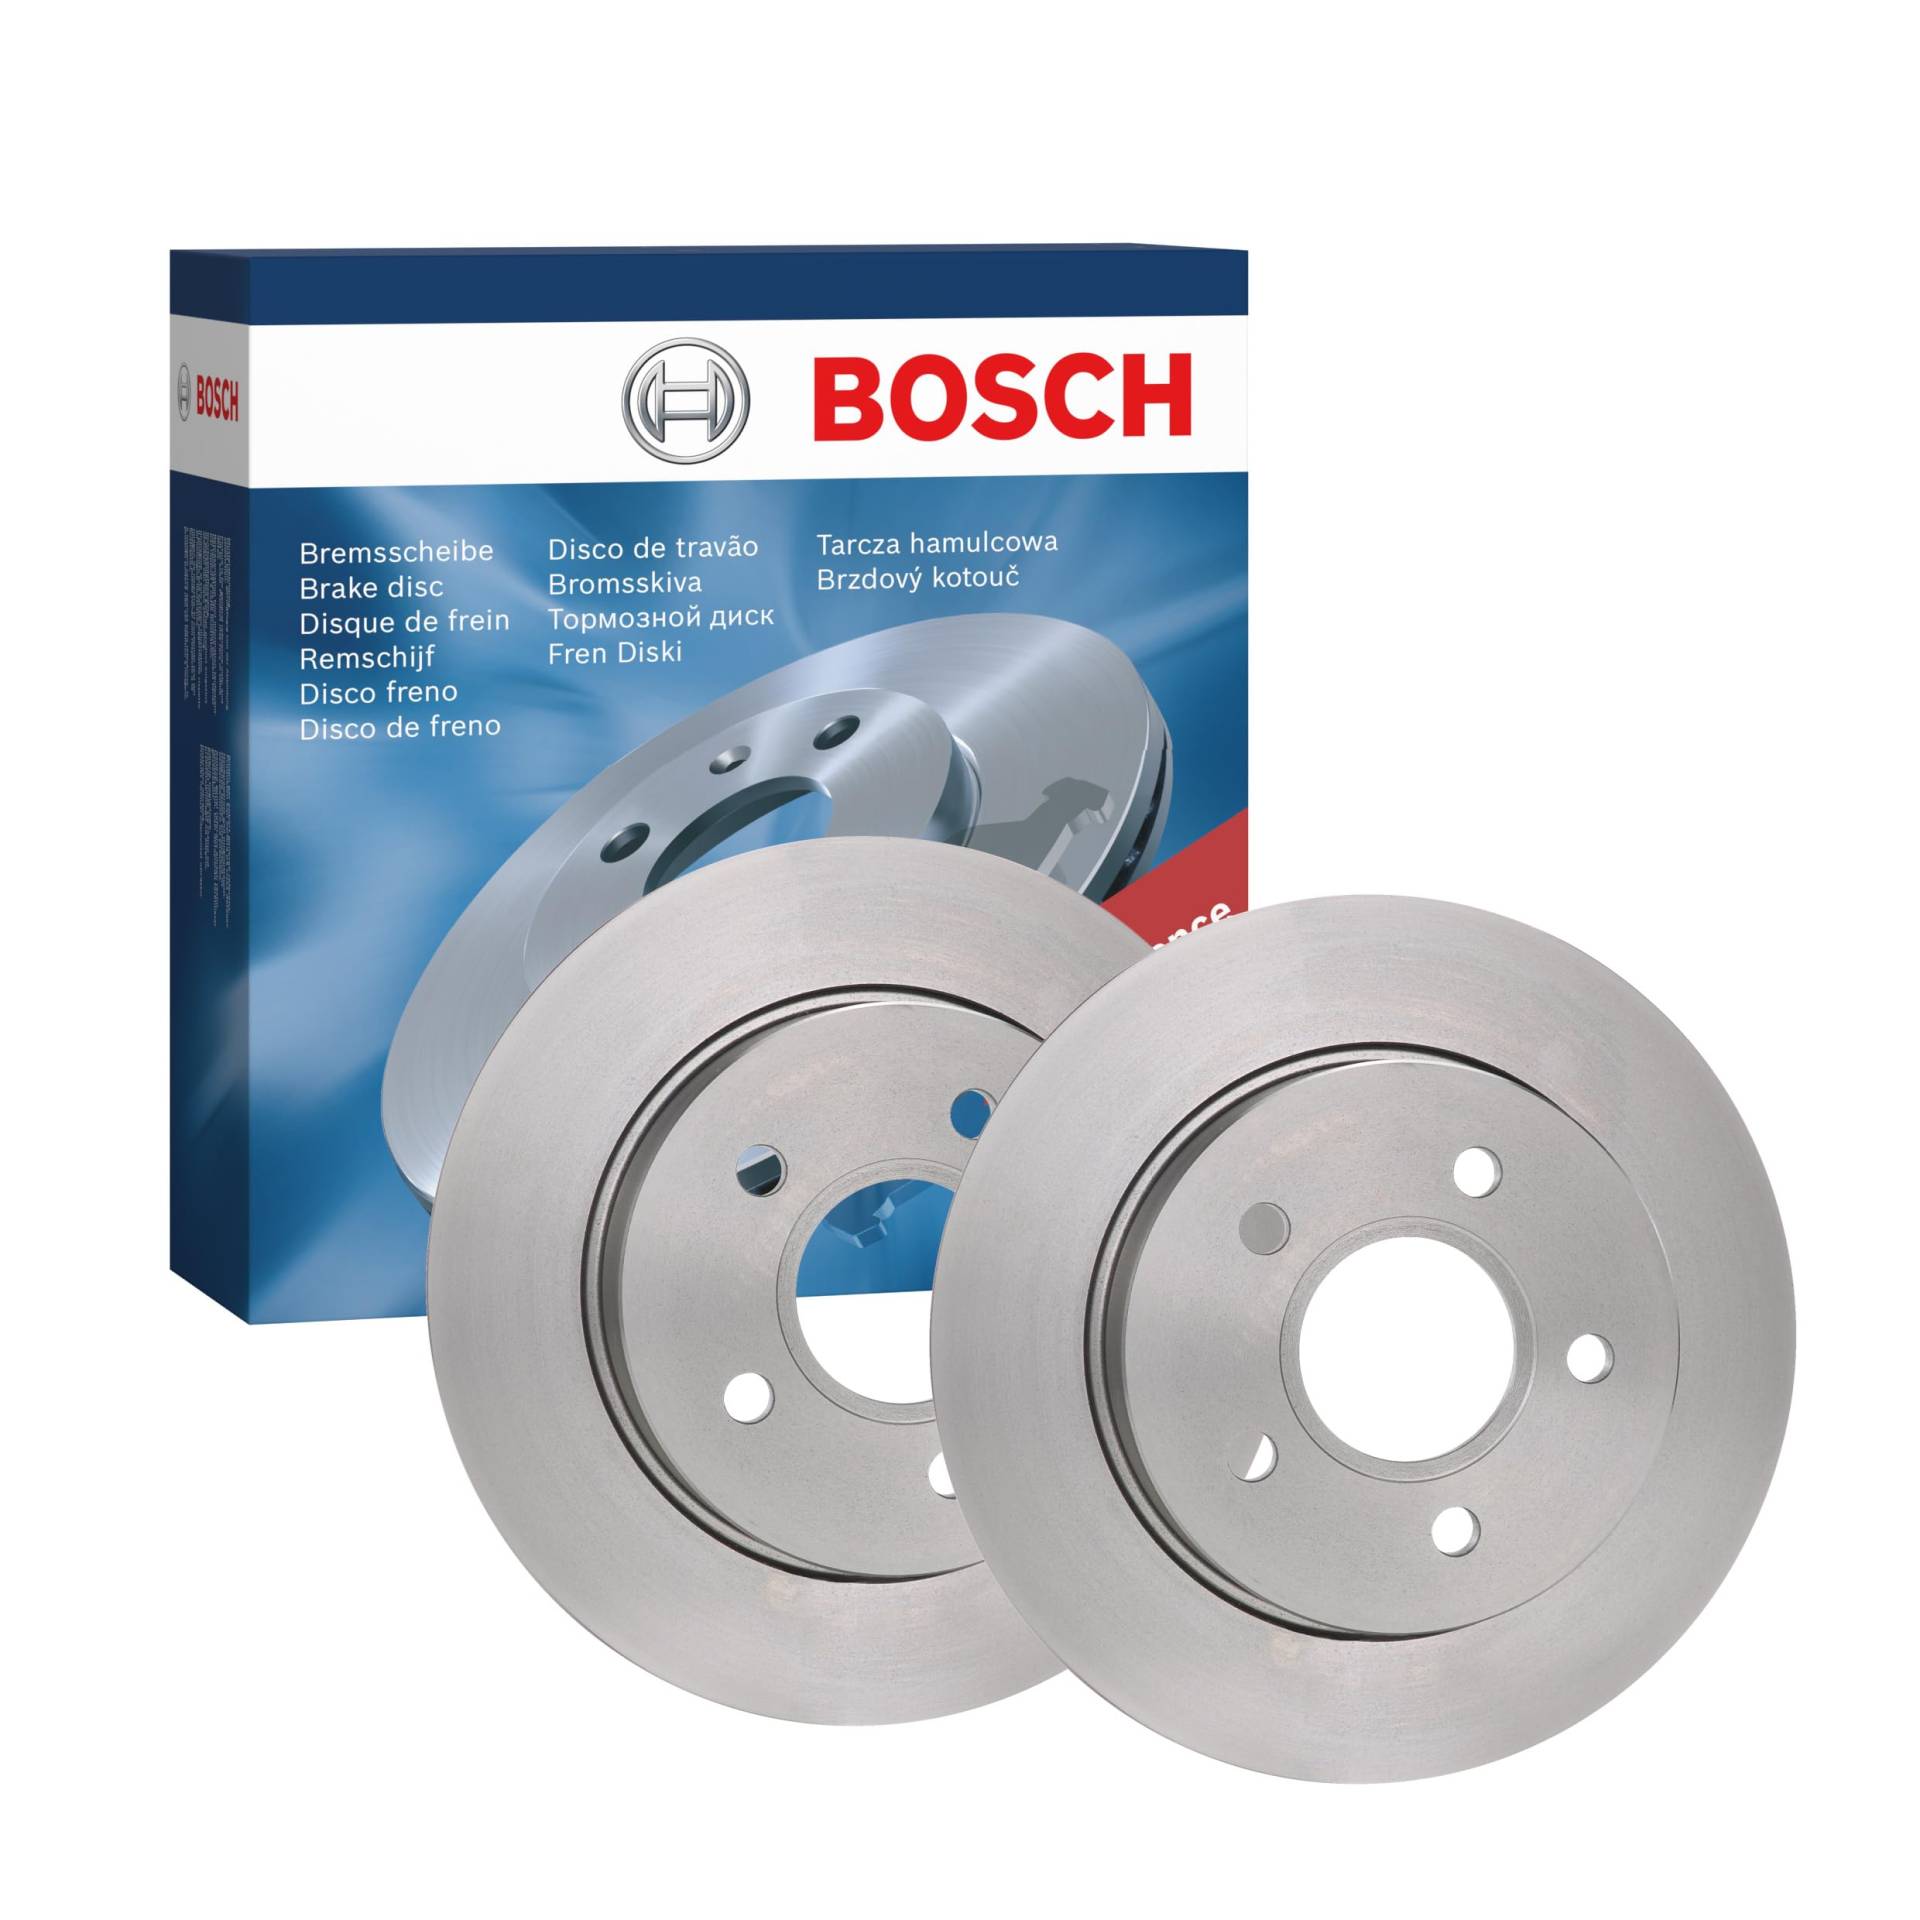 Bosch BD1048 Bremsscheiben - Hinterachse - ECE-R90 Zertifizierung - zwei Bremsscheiben pro Set von Bosch Automotive